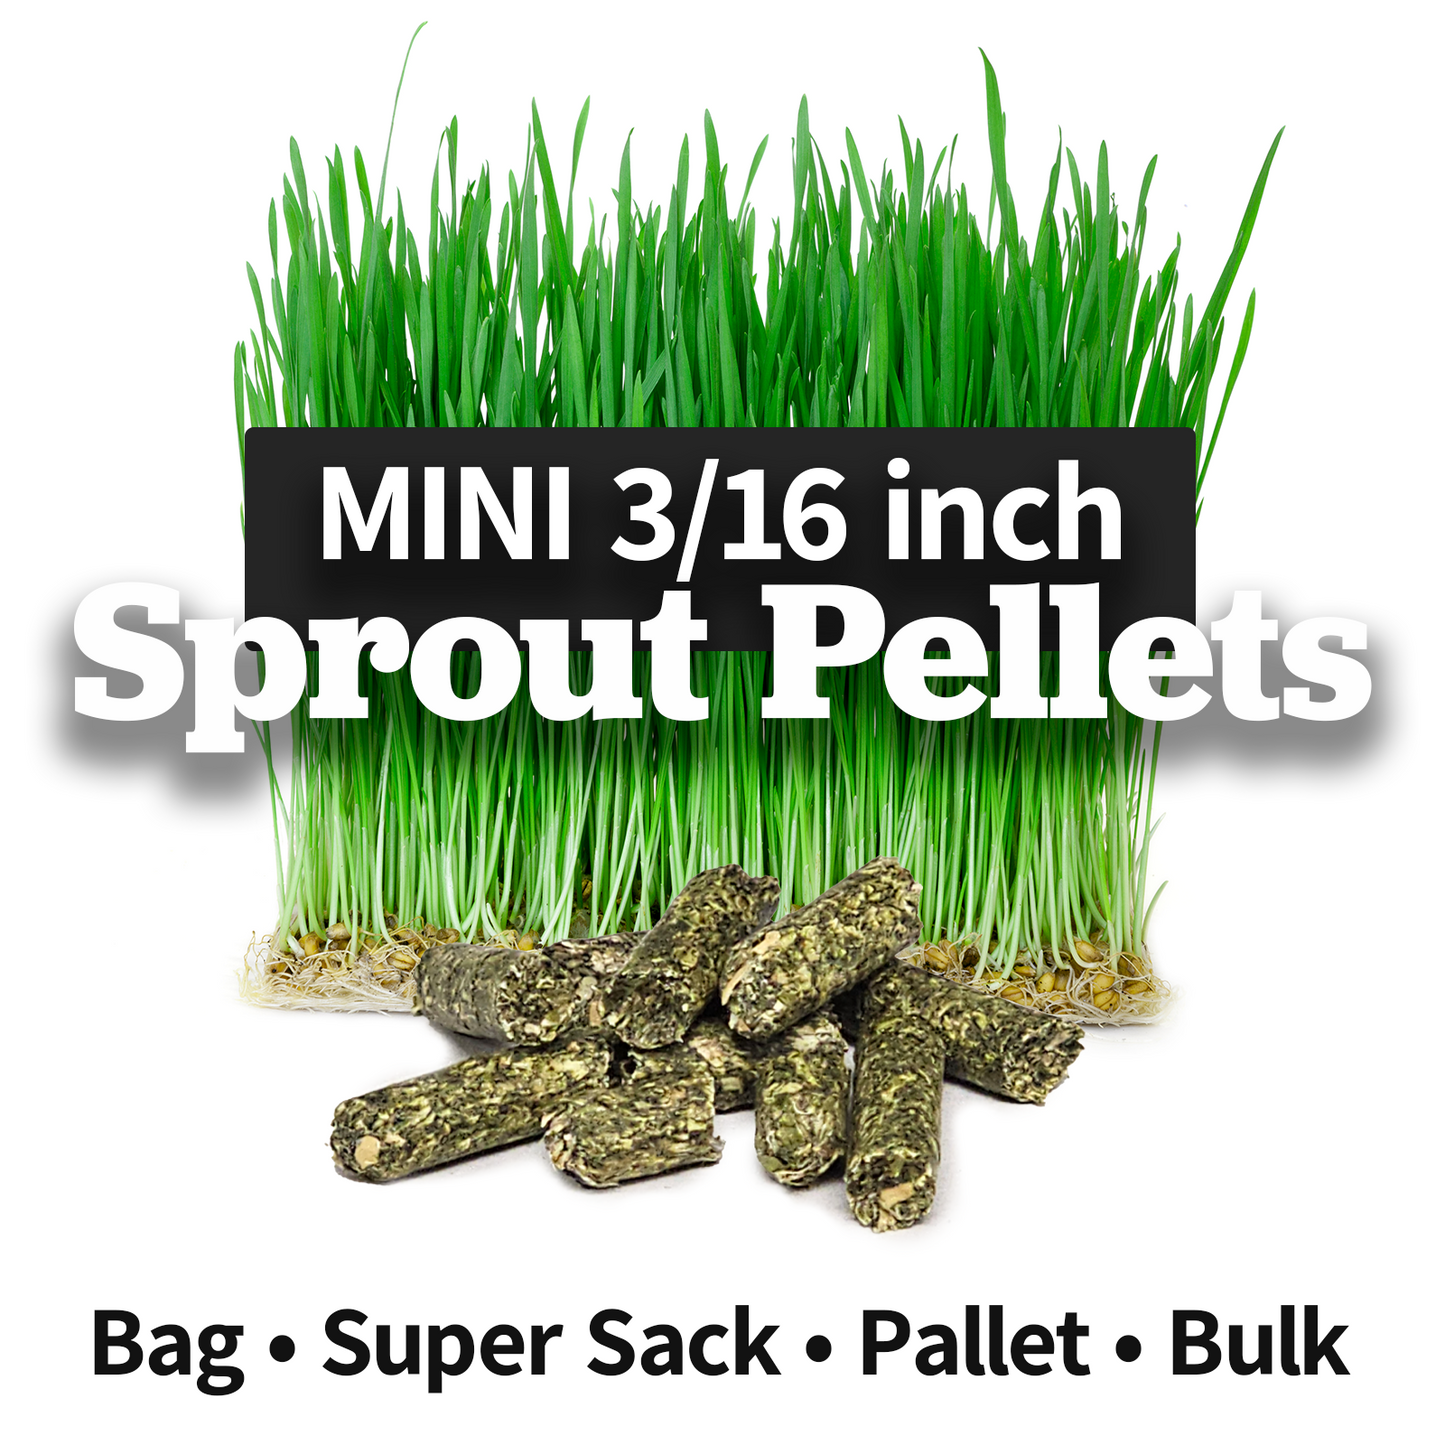 MINI Sprout Pellets